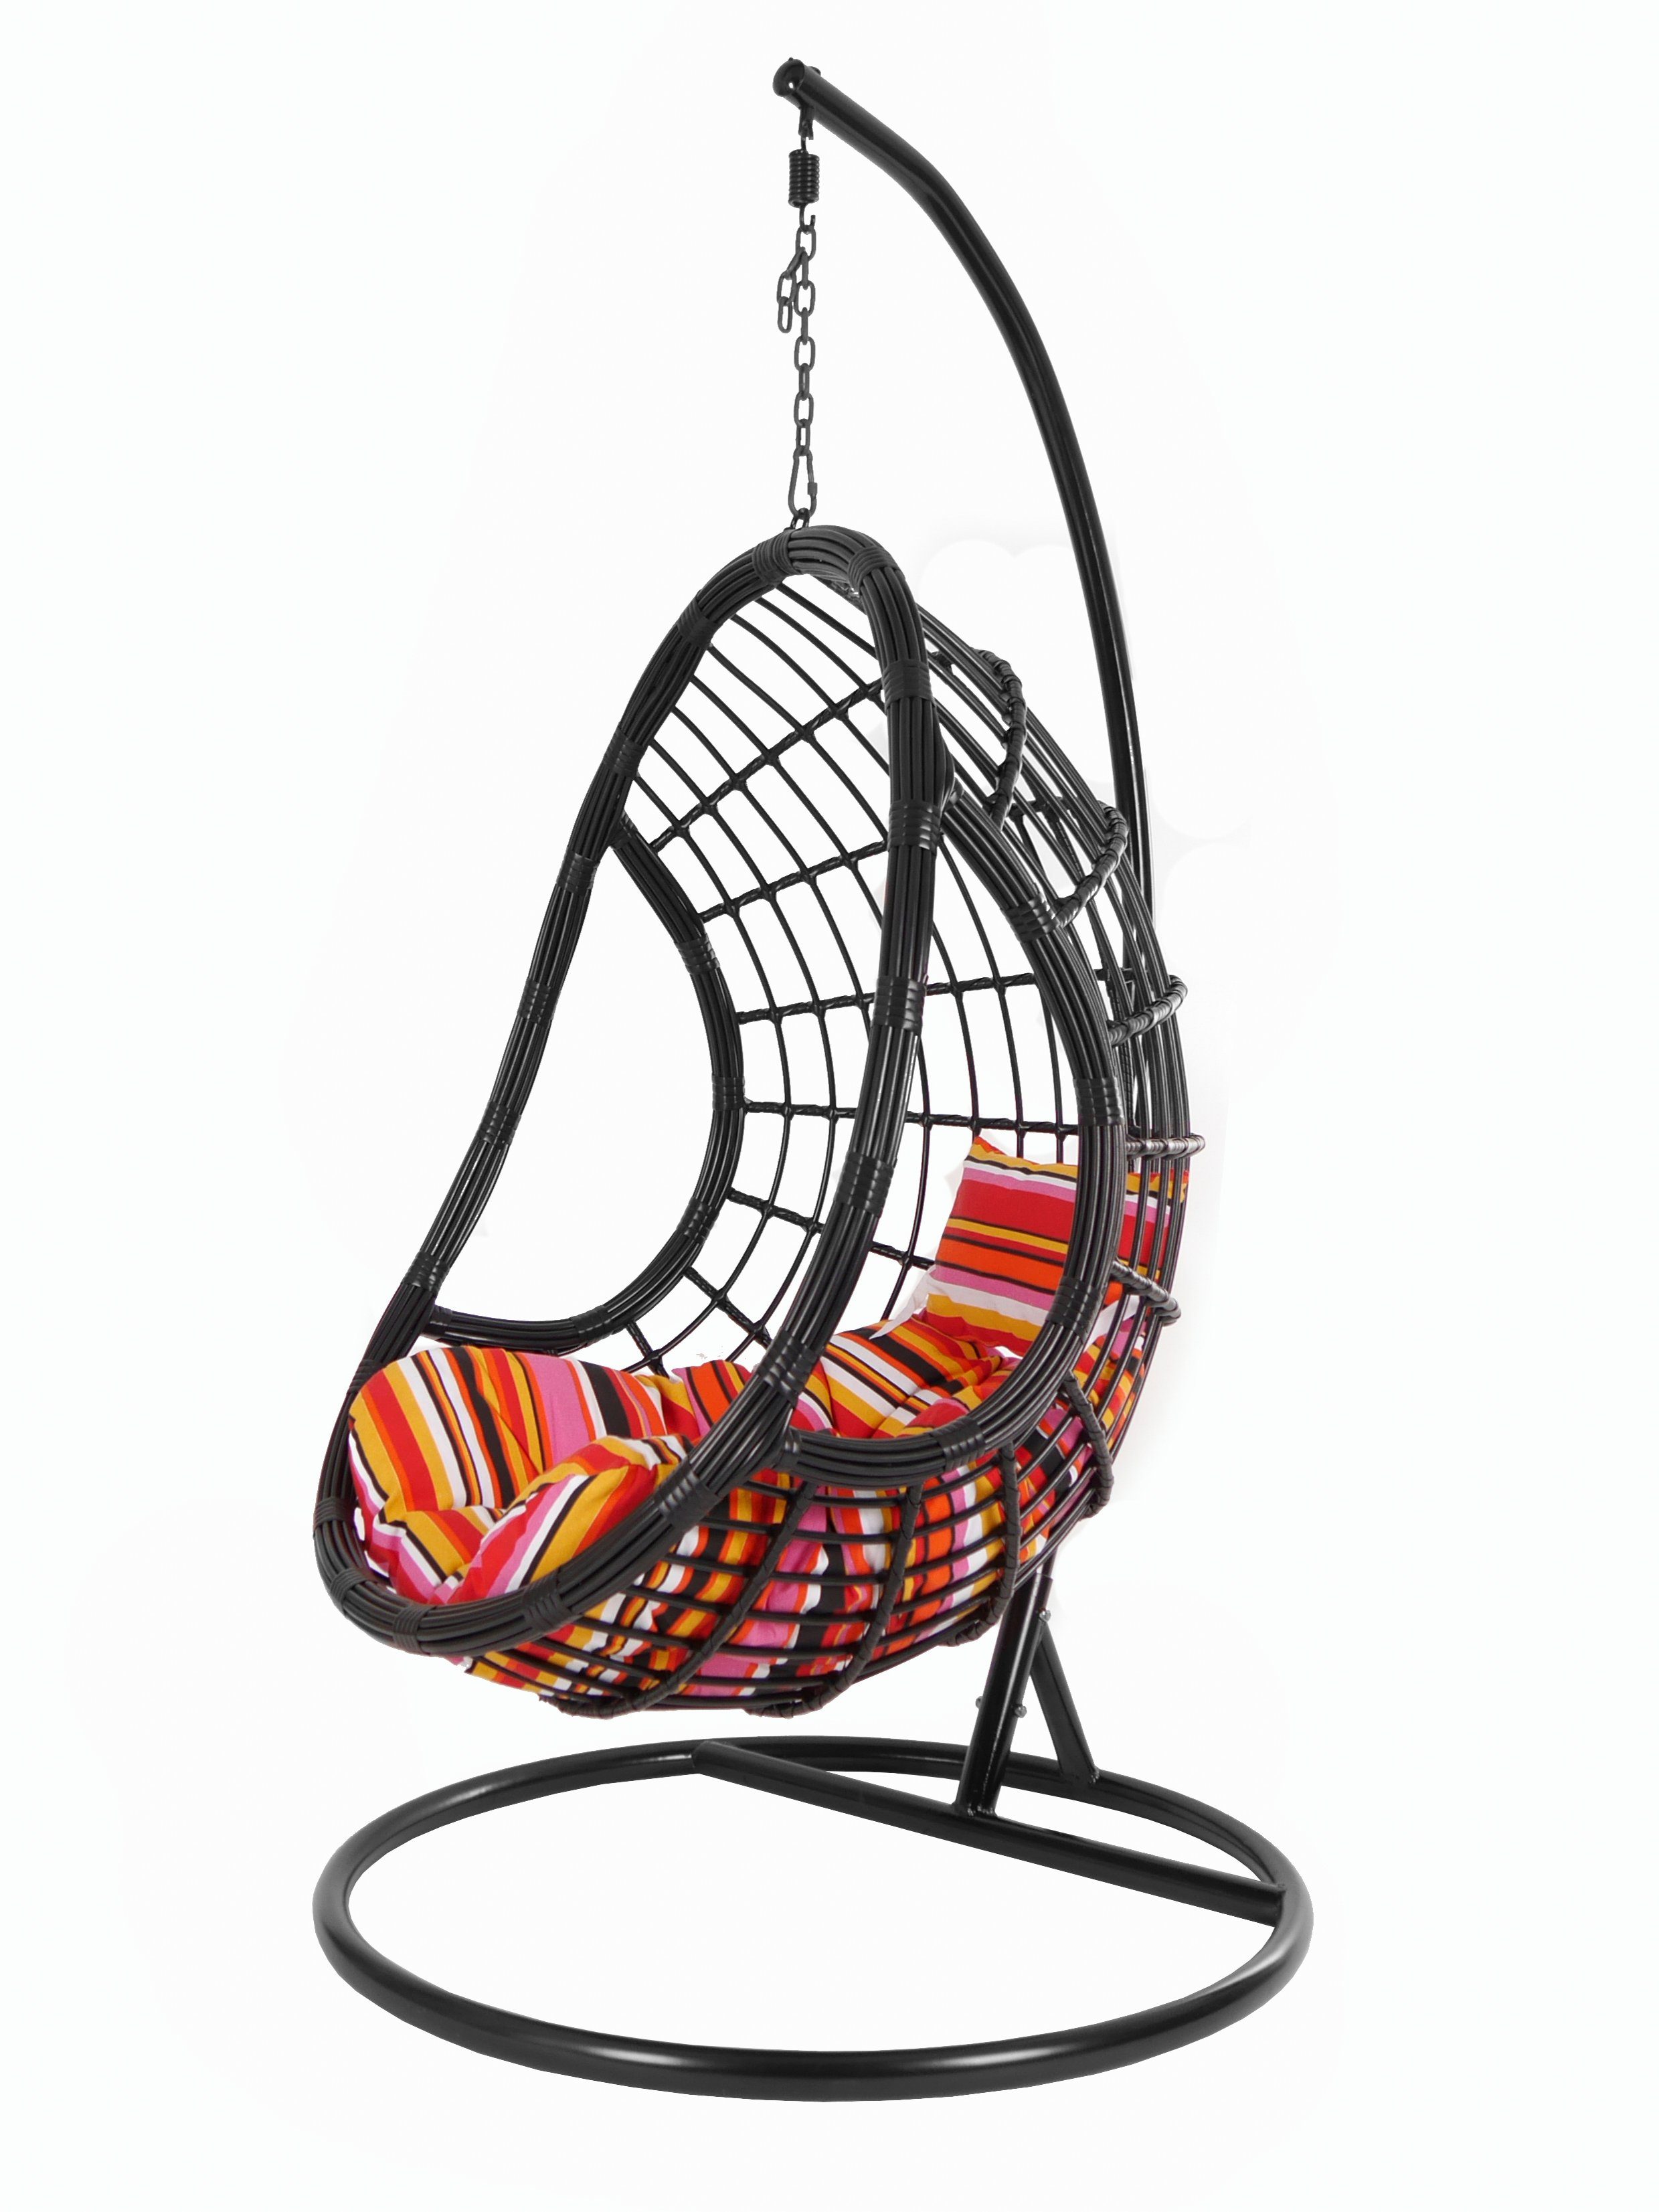 KIDEO Hängesessel PALMANOVA black, Swing Loungemöbel, Design Kissen, bunt (3450 Schwebesessel, schwarz, und edles lollipop) Gestell Hängesessel mit Chair, gestreift